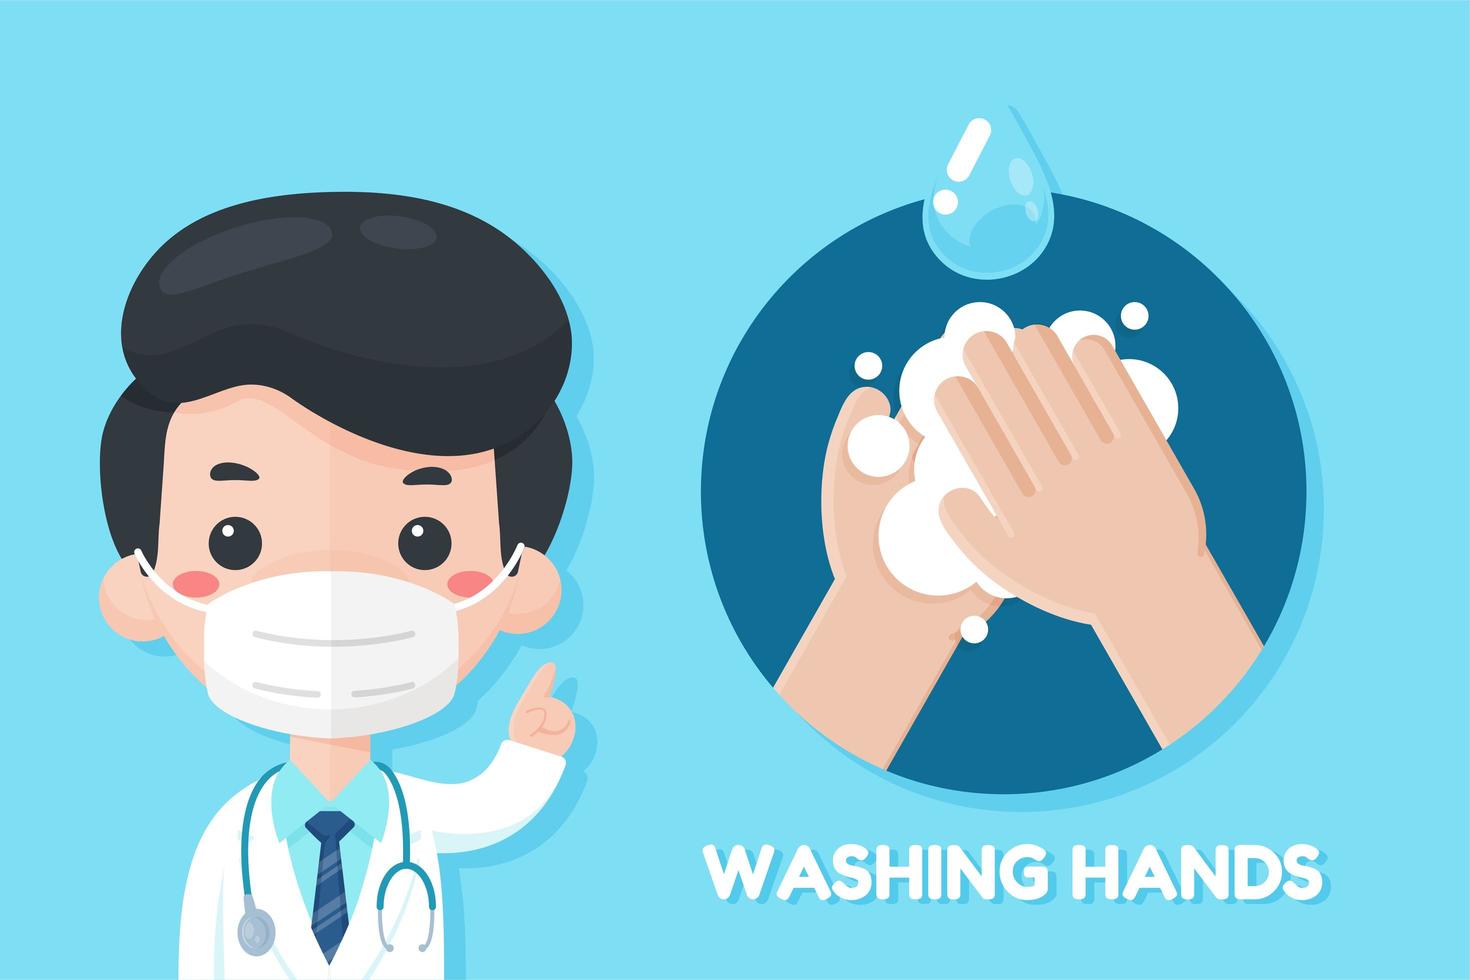 Cartoon Doctor Recommending to Wash Hands vector